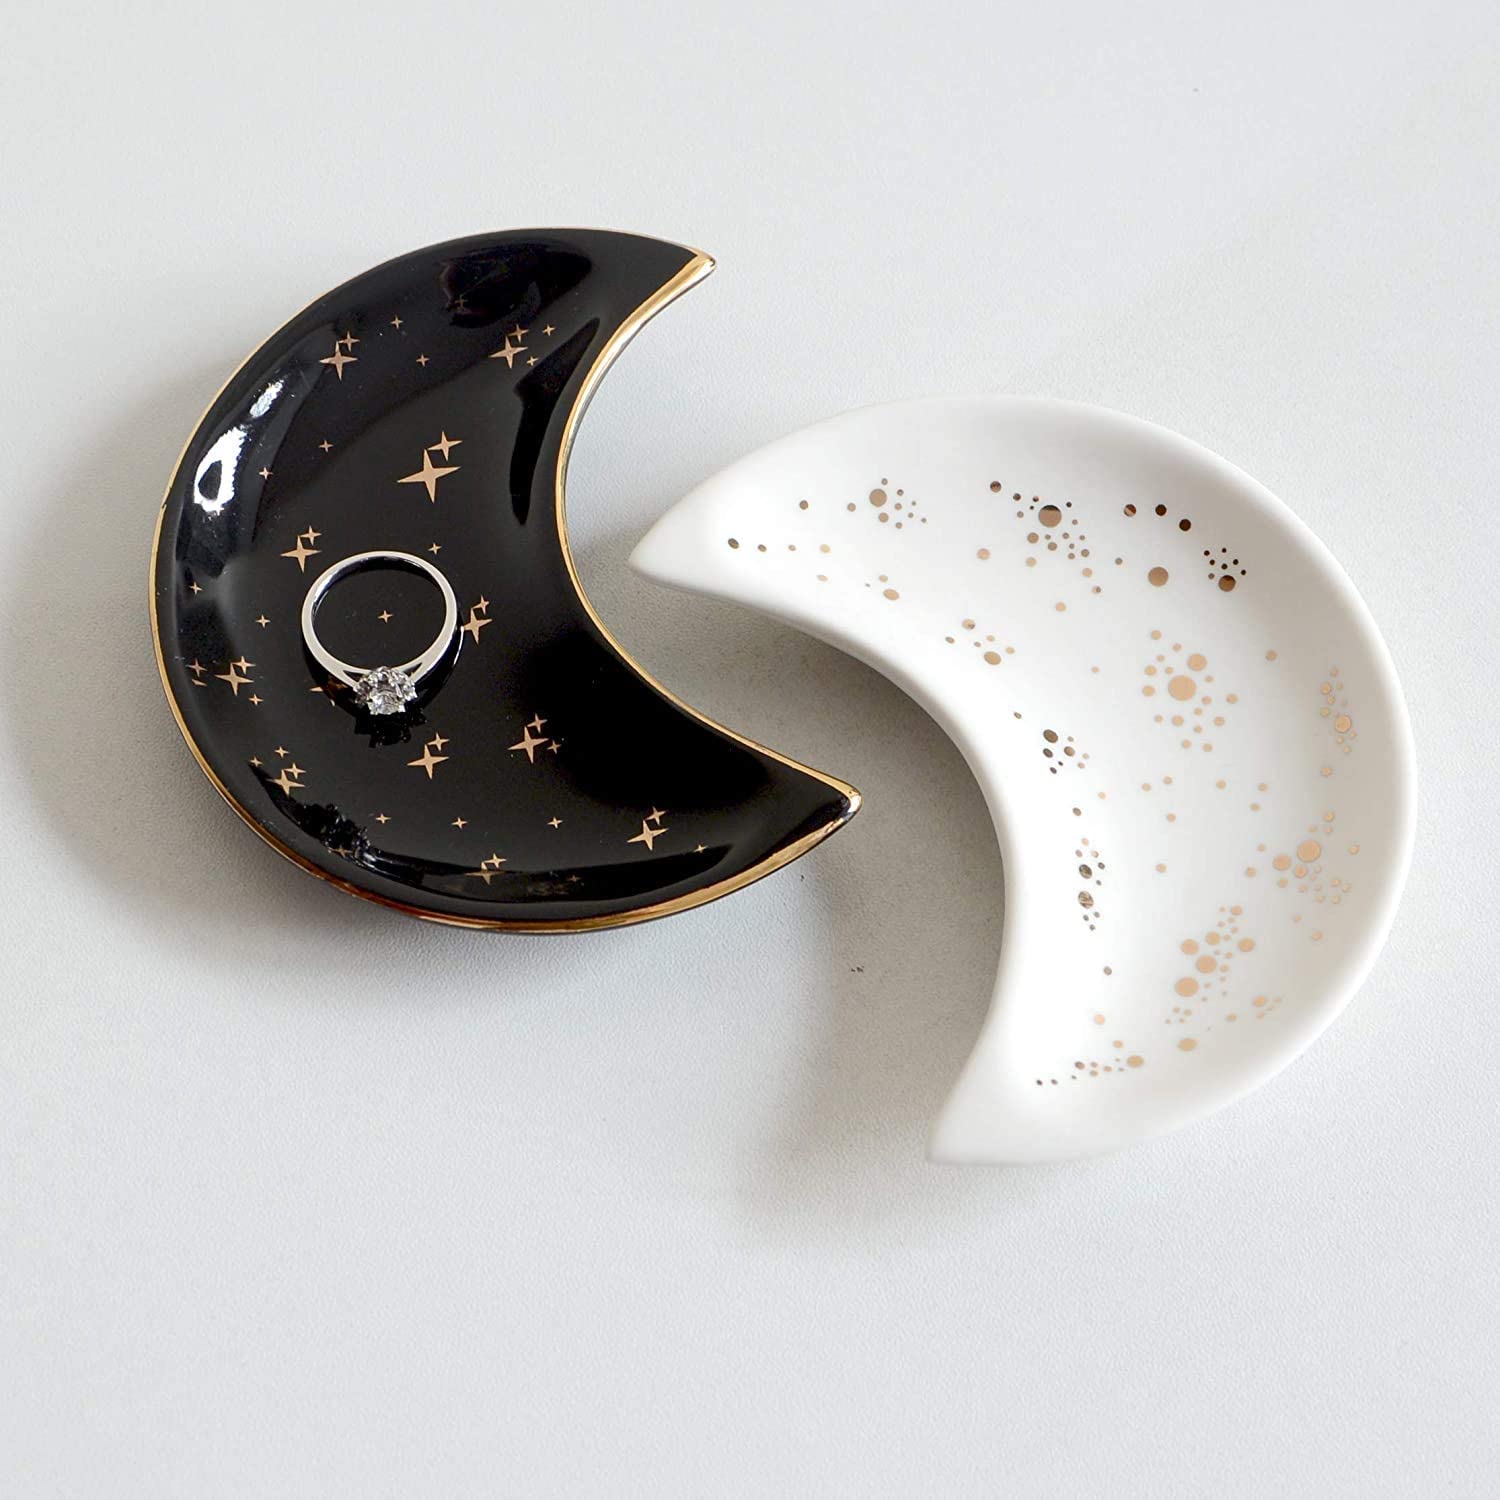 Moon-Shaped Jewelry Dish Tray